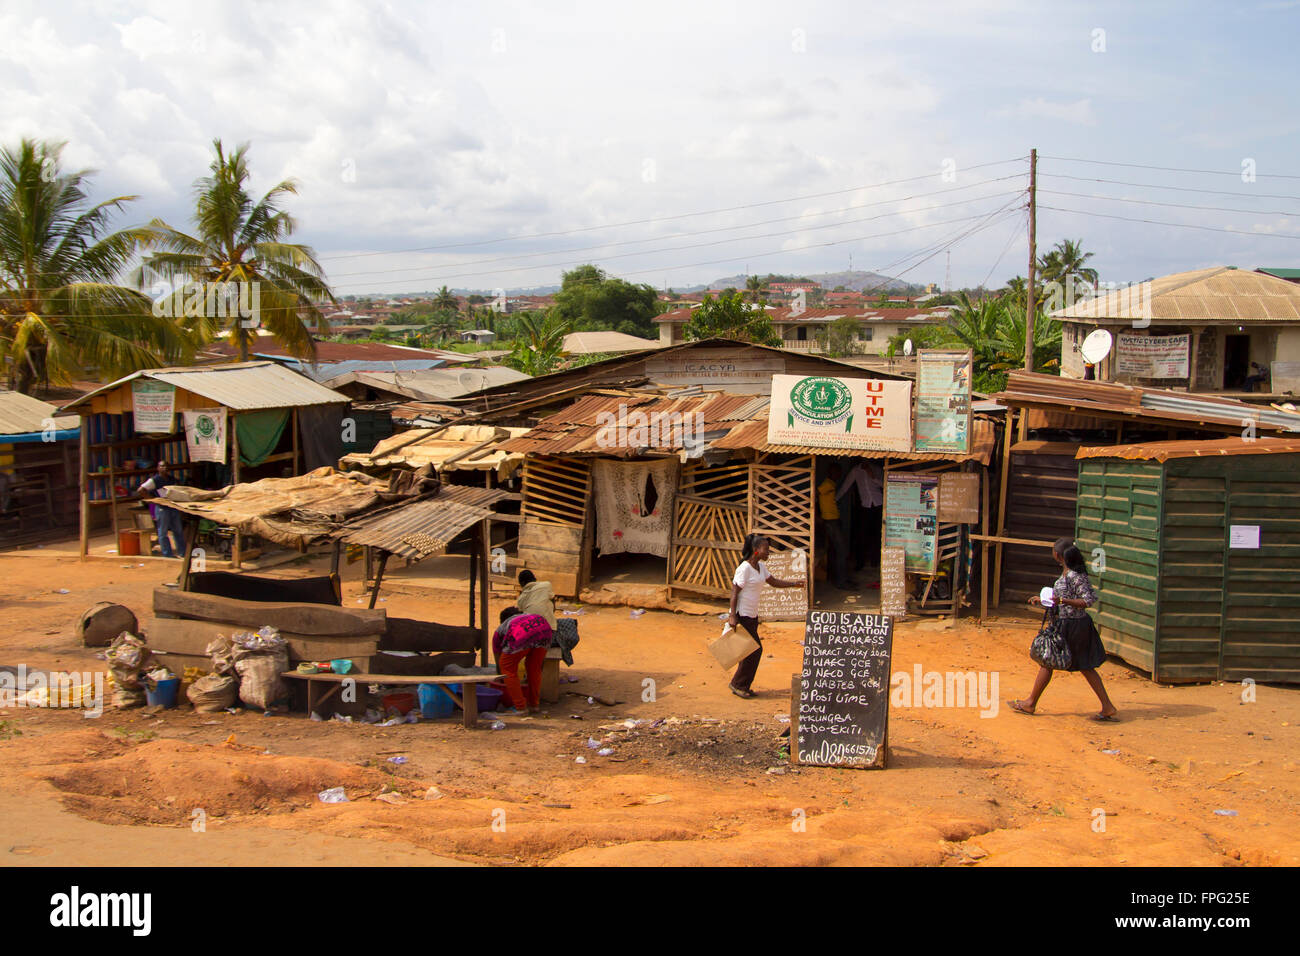 LAGOS, NIGERIA - 11 MAI 2012 : Les gens autour d'une zone pauvre dans la ville de Lagos, l'une des villes plus forte croissance en Afrique Banque D'Images